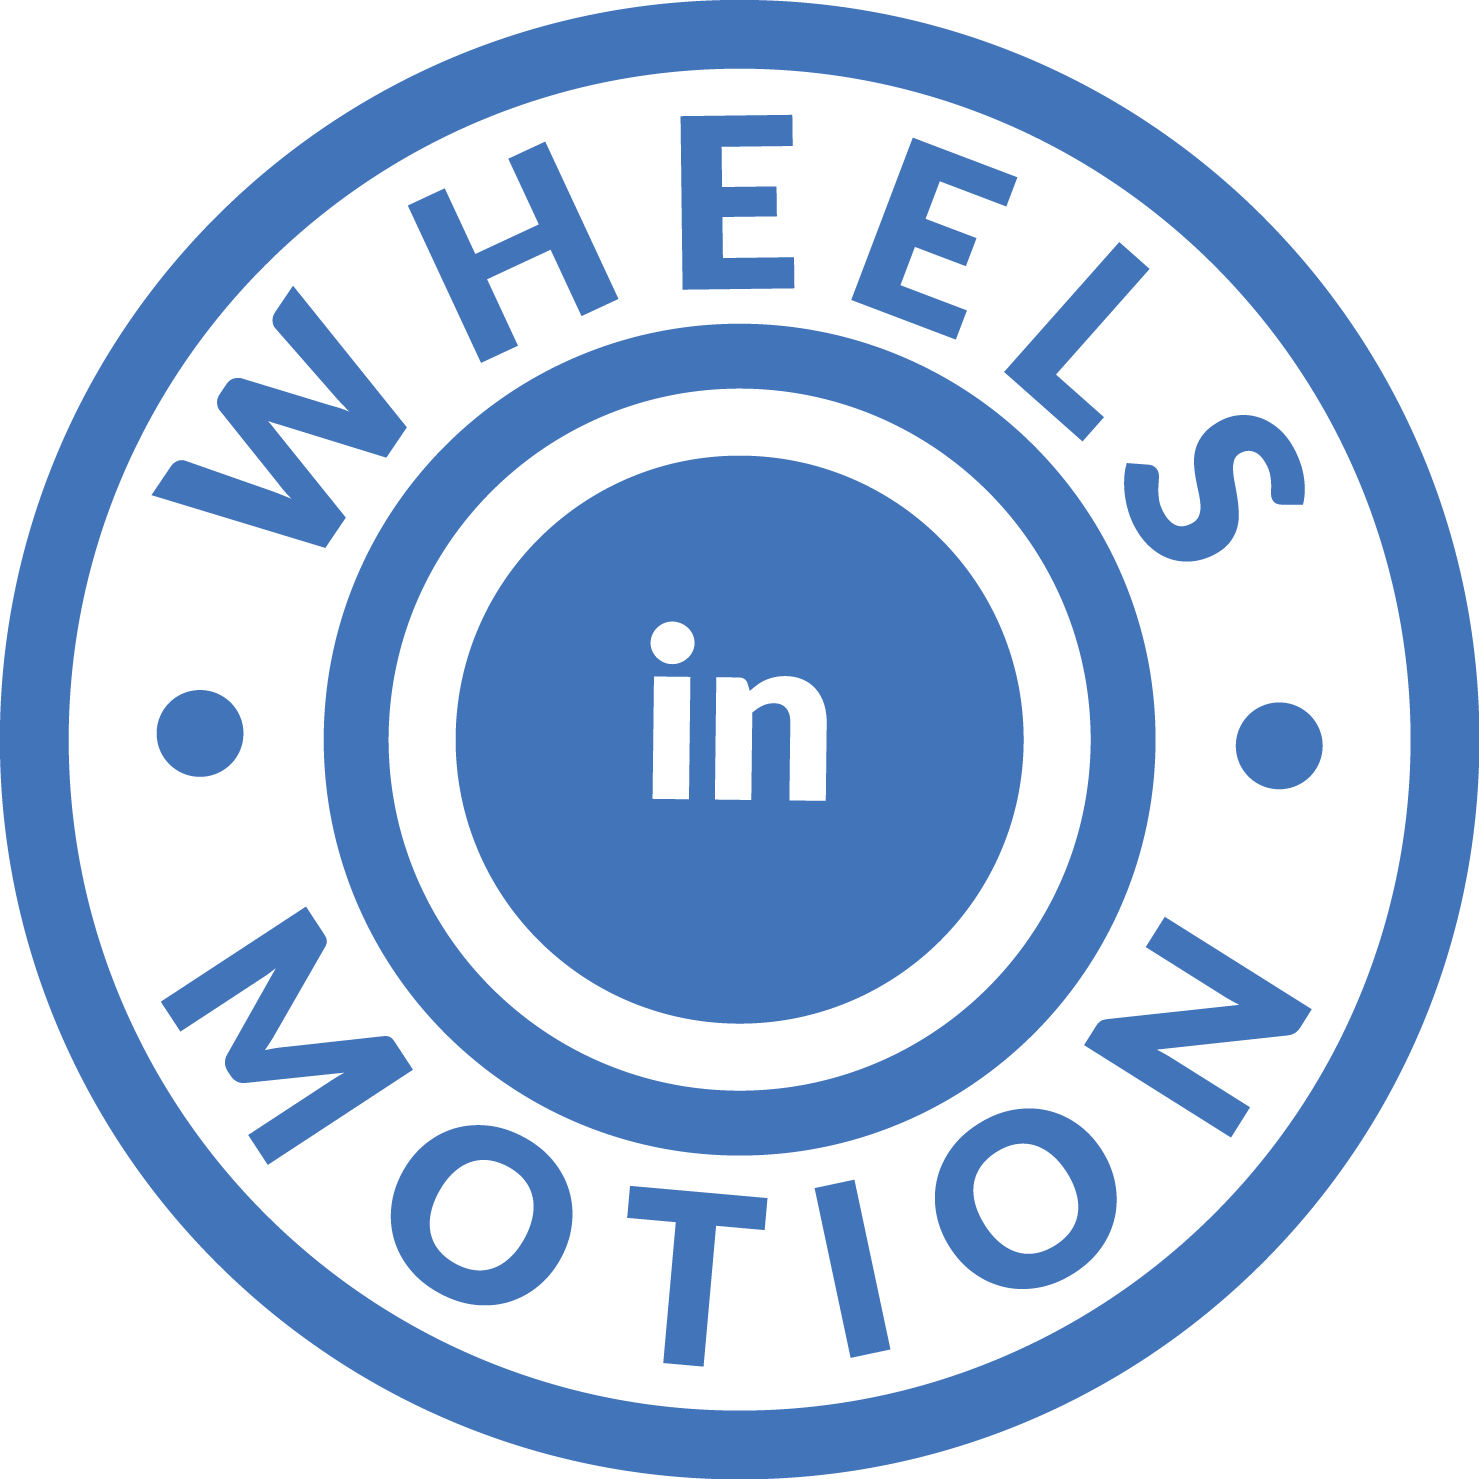 Wheels in Motion